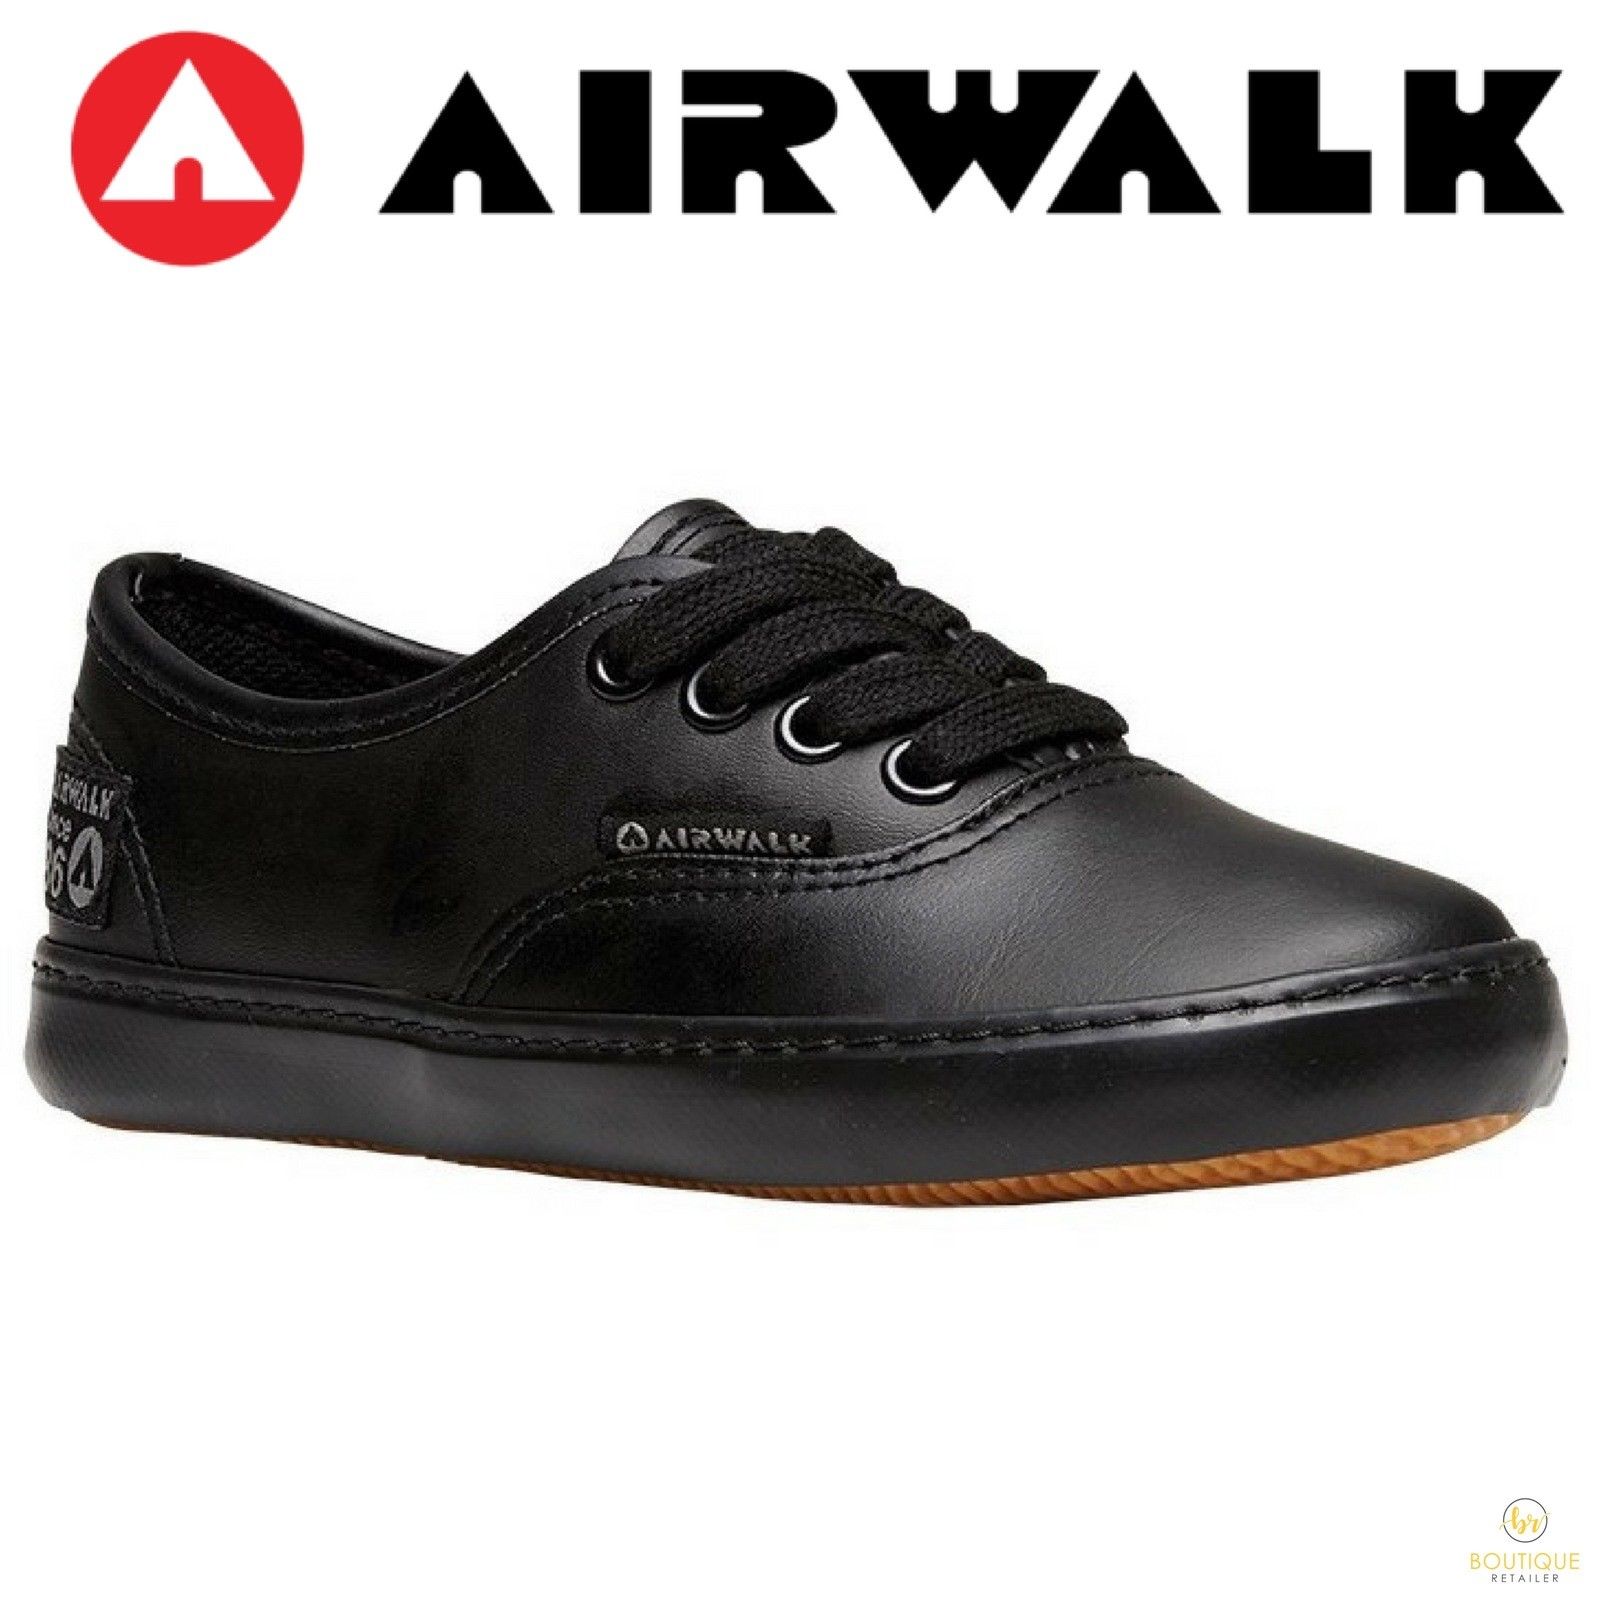 airwalk sandals canada